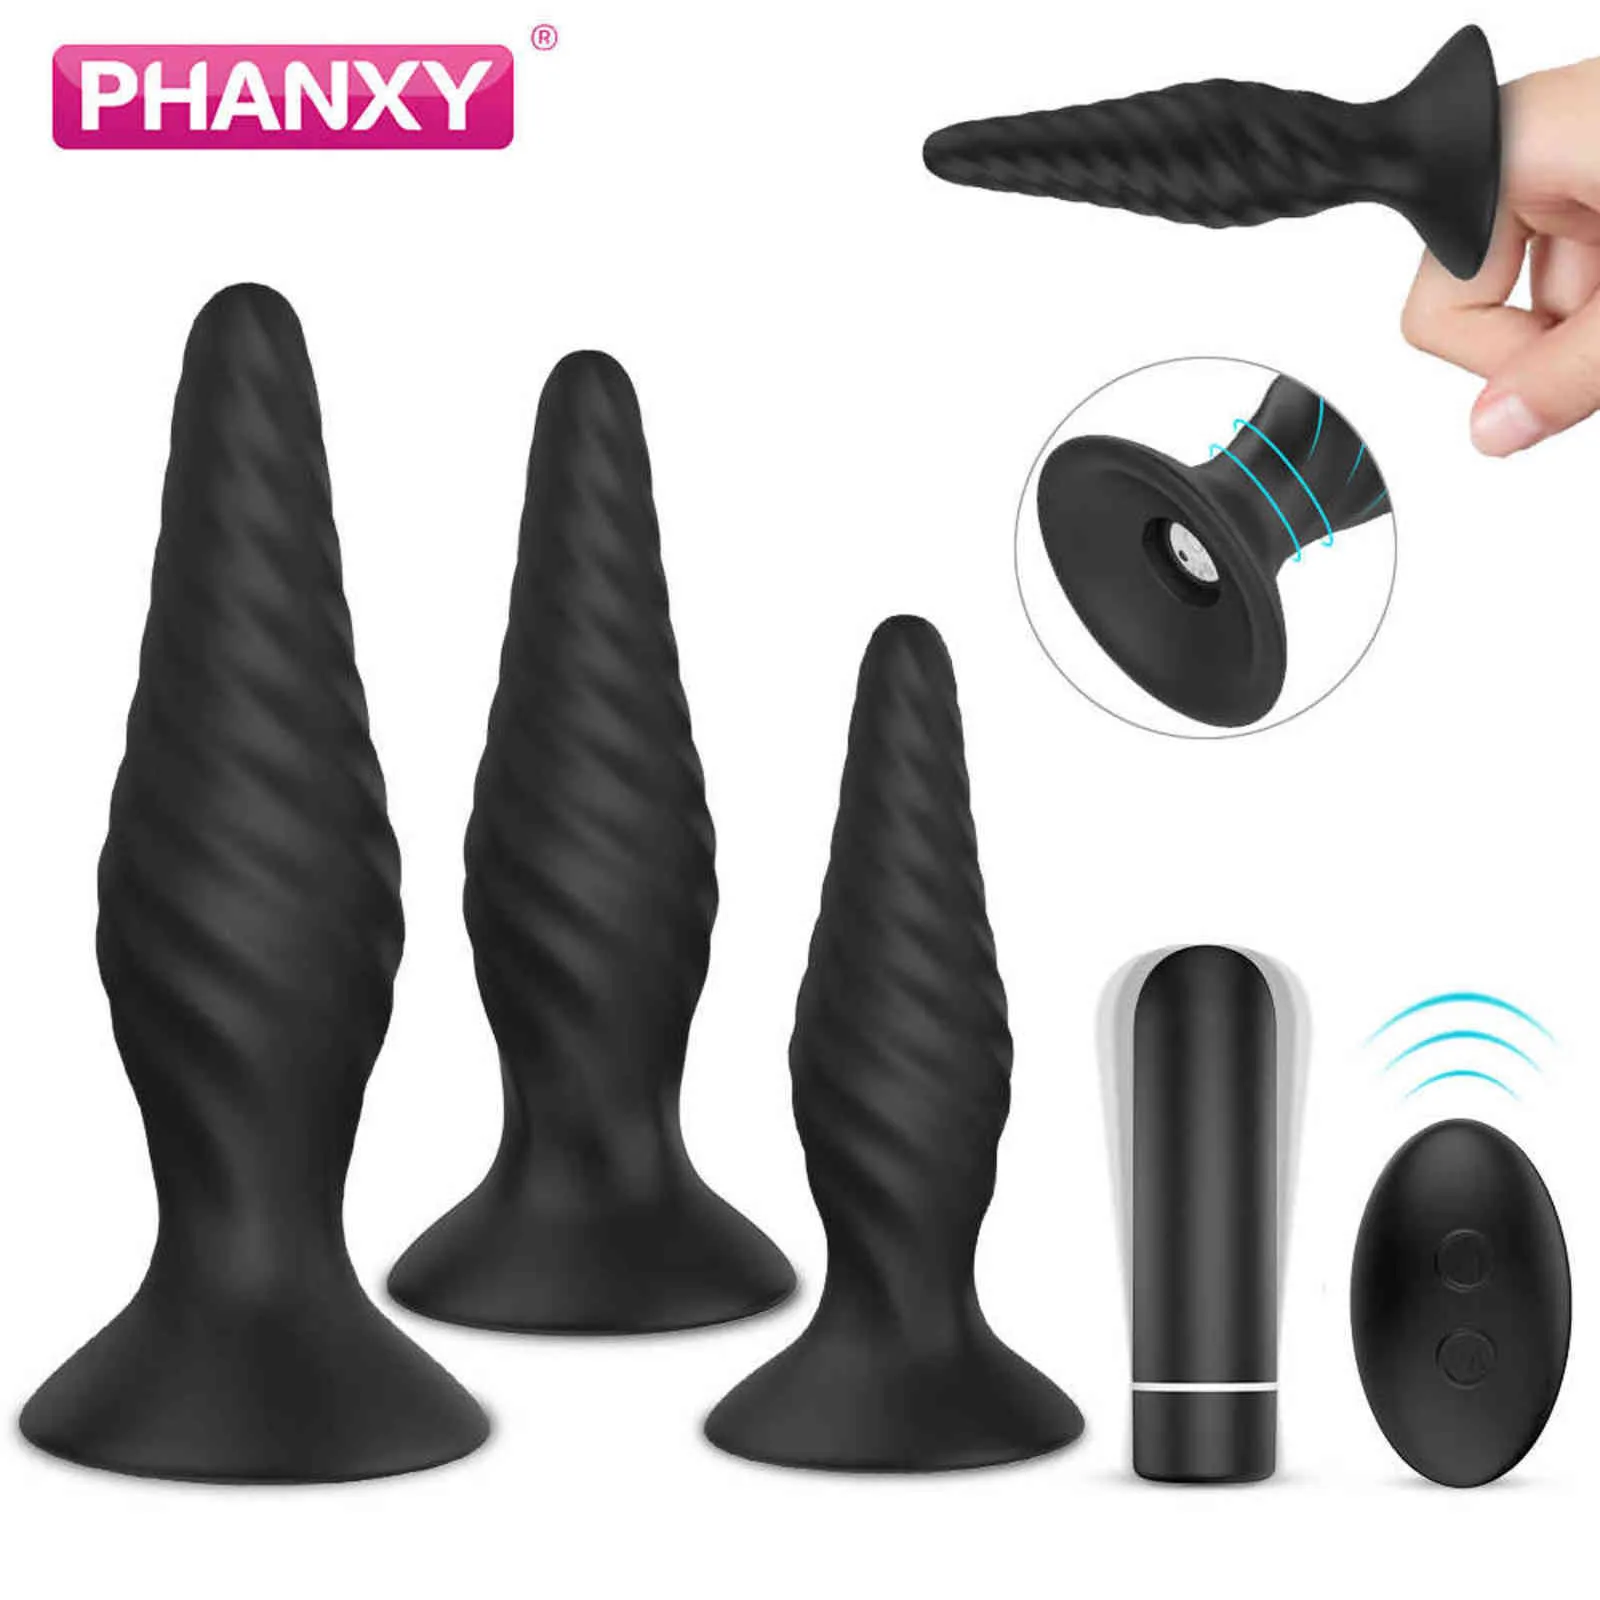 NXY Sex Anal Zabawki Phanxy Butt Plug Set Dilator Tube Duża Ogromna zabawka Wibrator Wibracyjny Tyłek wesoły Korka Silikon dla Mężczyzna Kobiety Produkty 1201